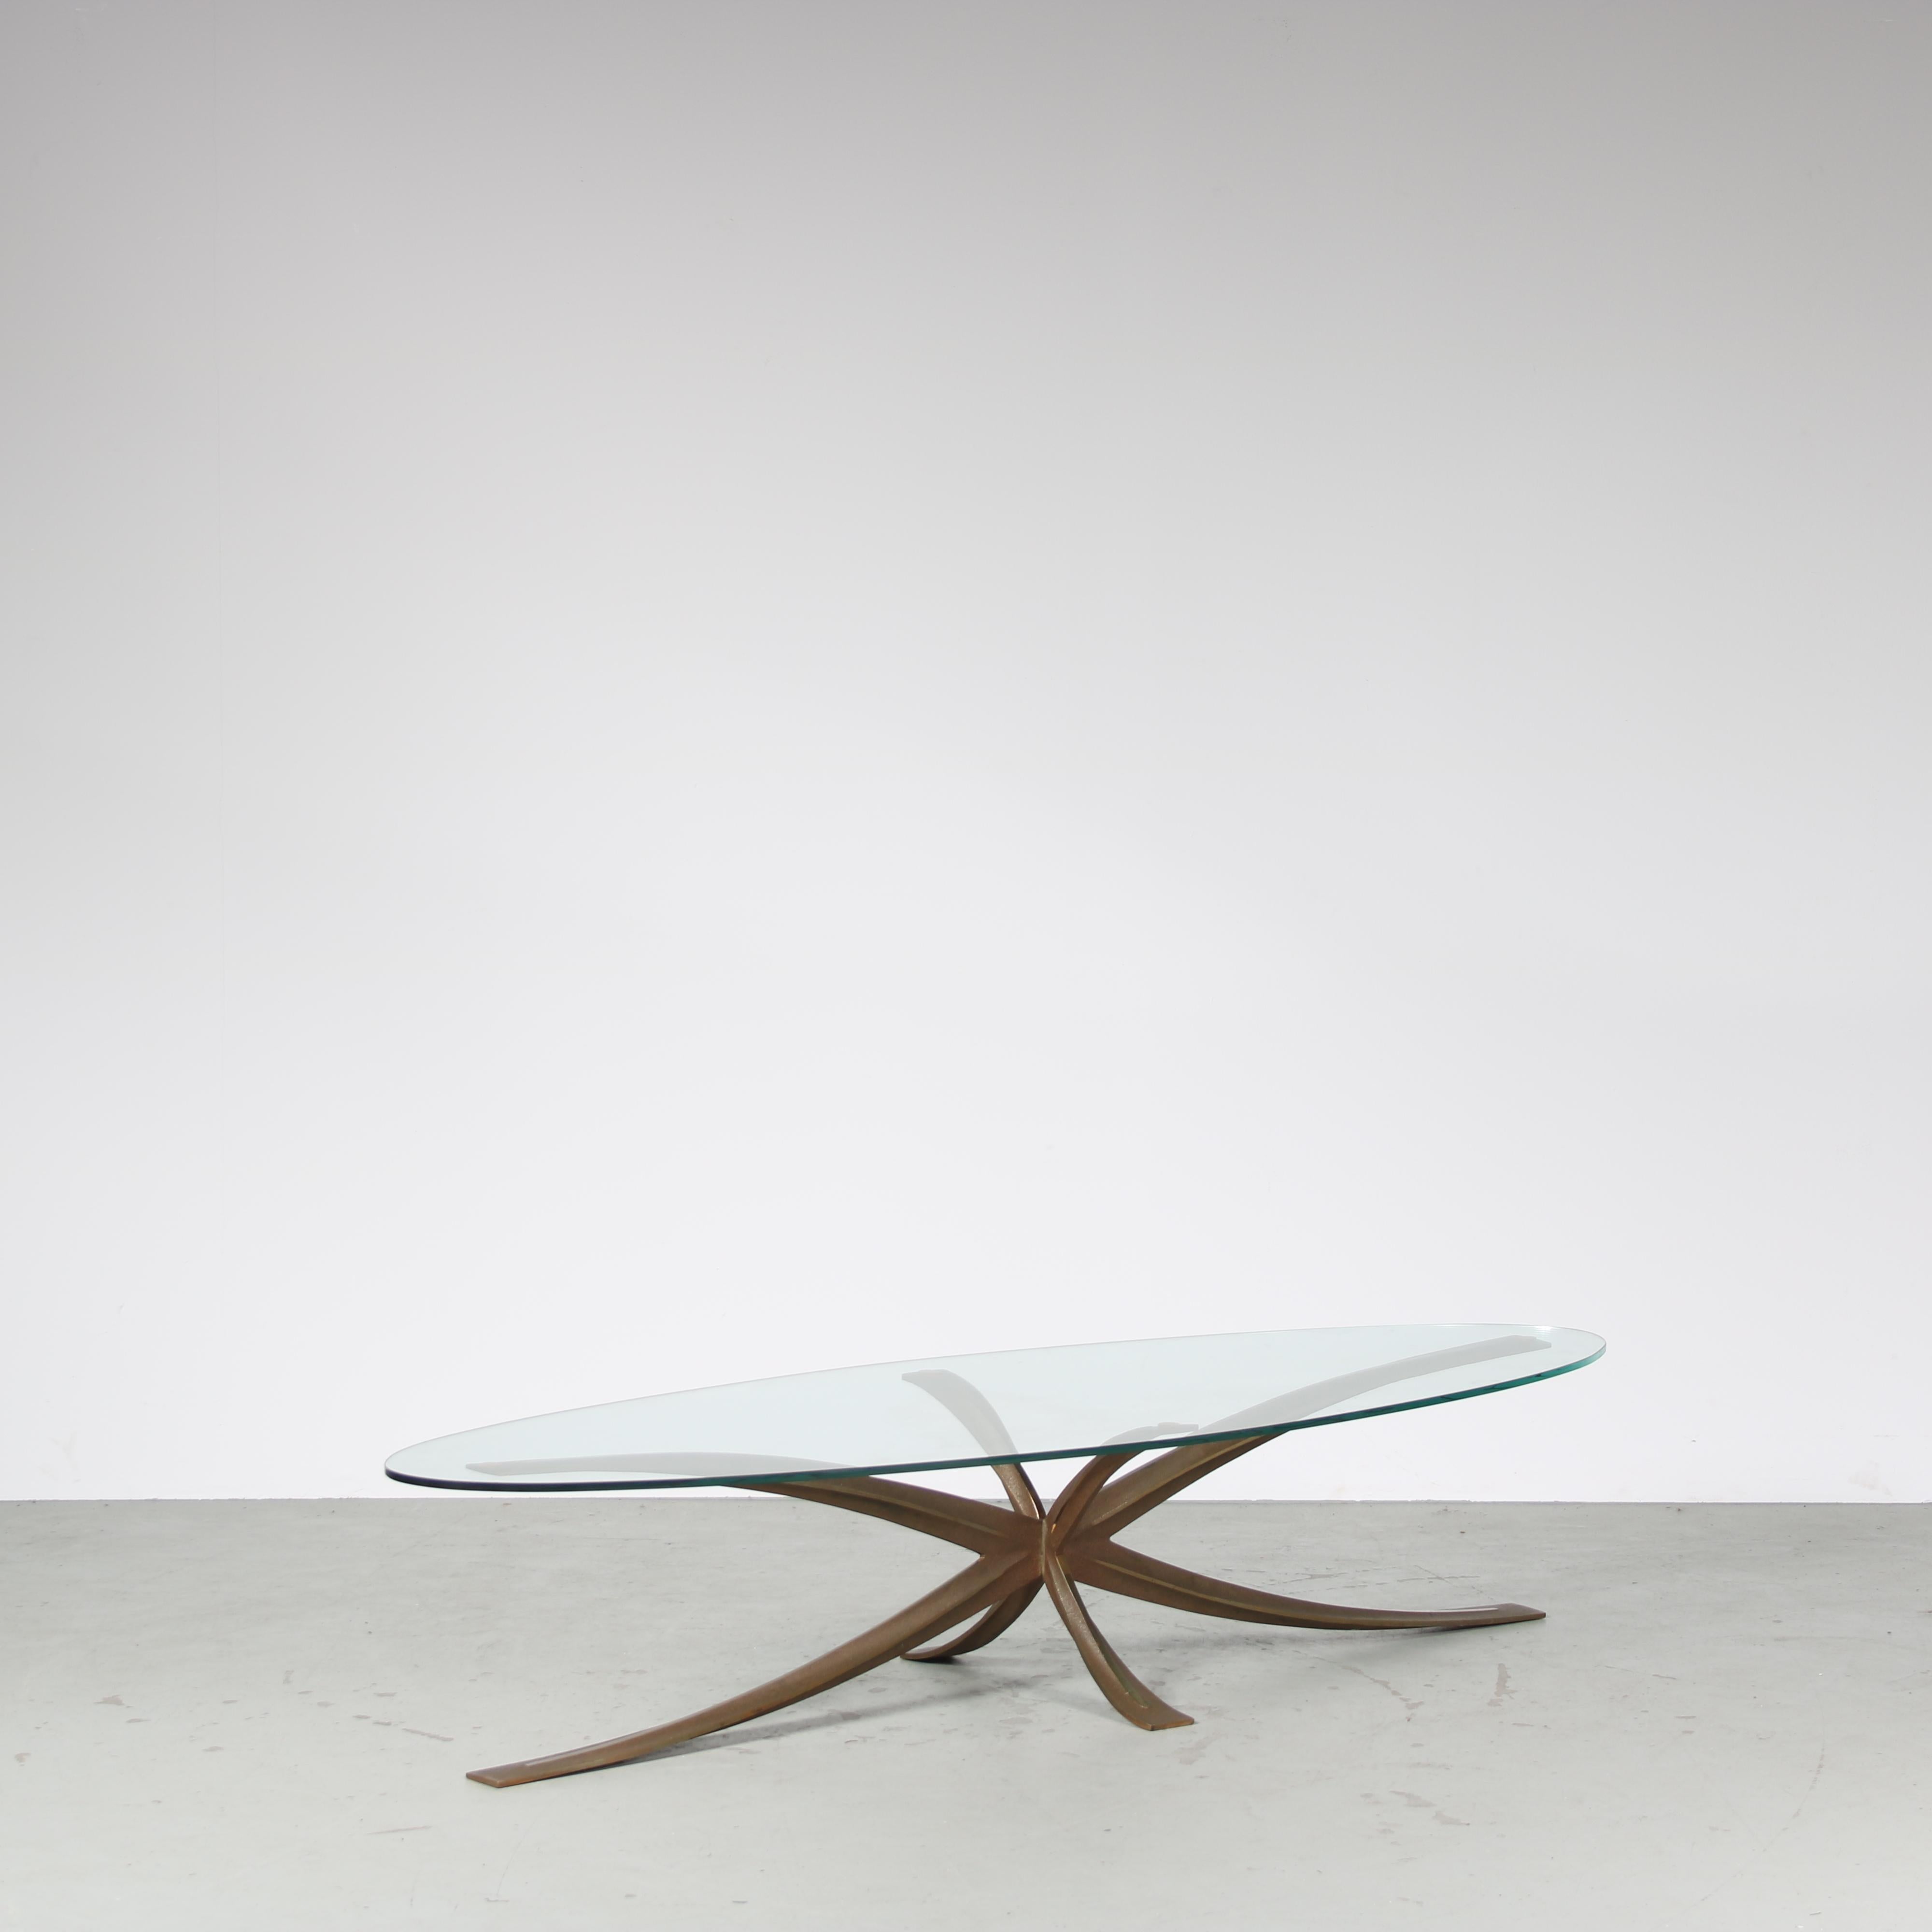 Une table basse exceptionnelle et très rare, conçue par Michel Mangematin & Roger Bruny et fabriquée en France vers 1960.

Fabriquée avec précision et art, la table présente un élégant plateau ovale en verre transparent sur une base sculpturale en